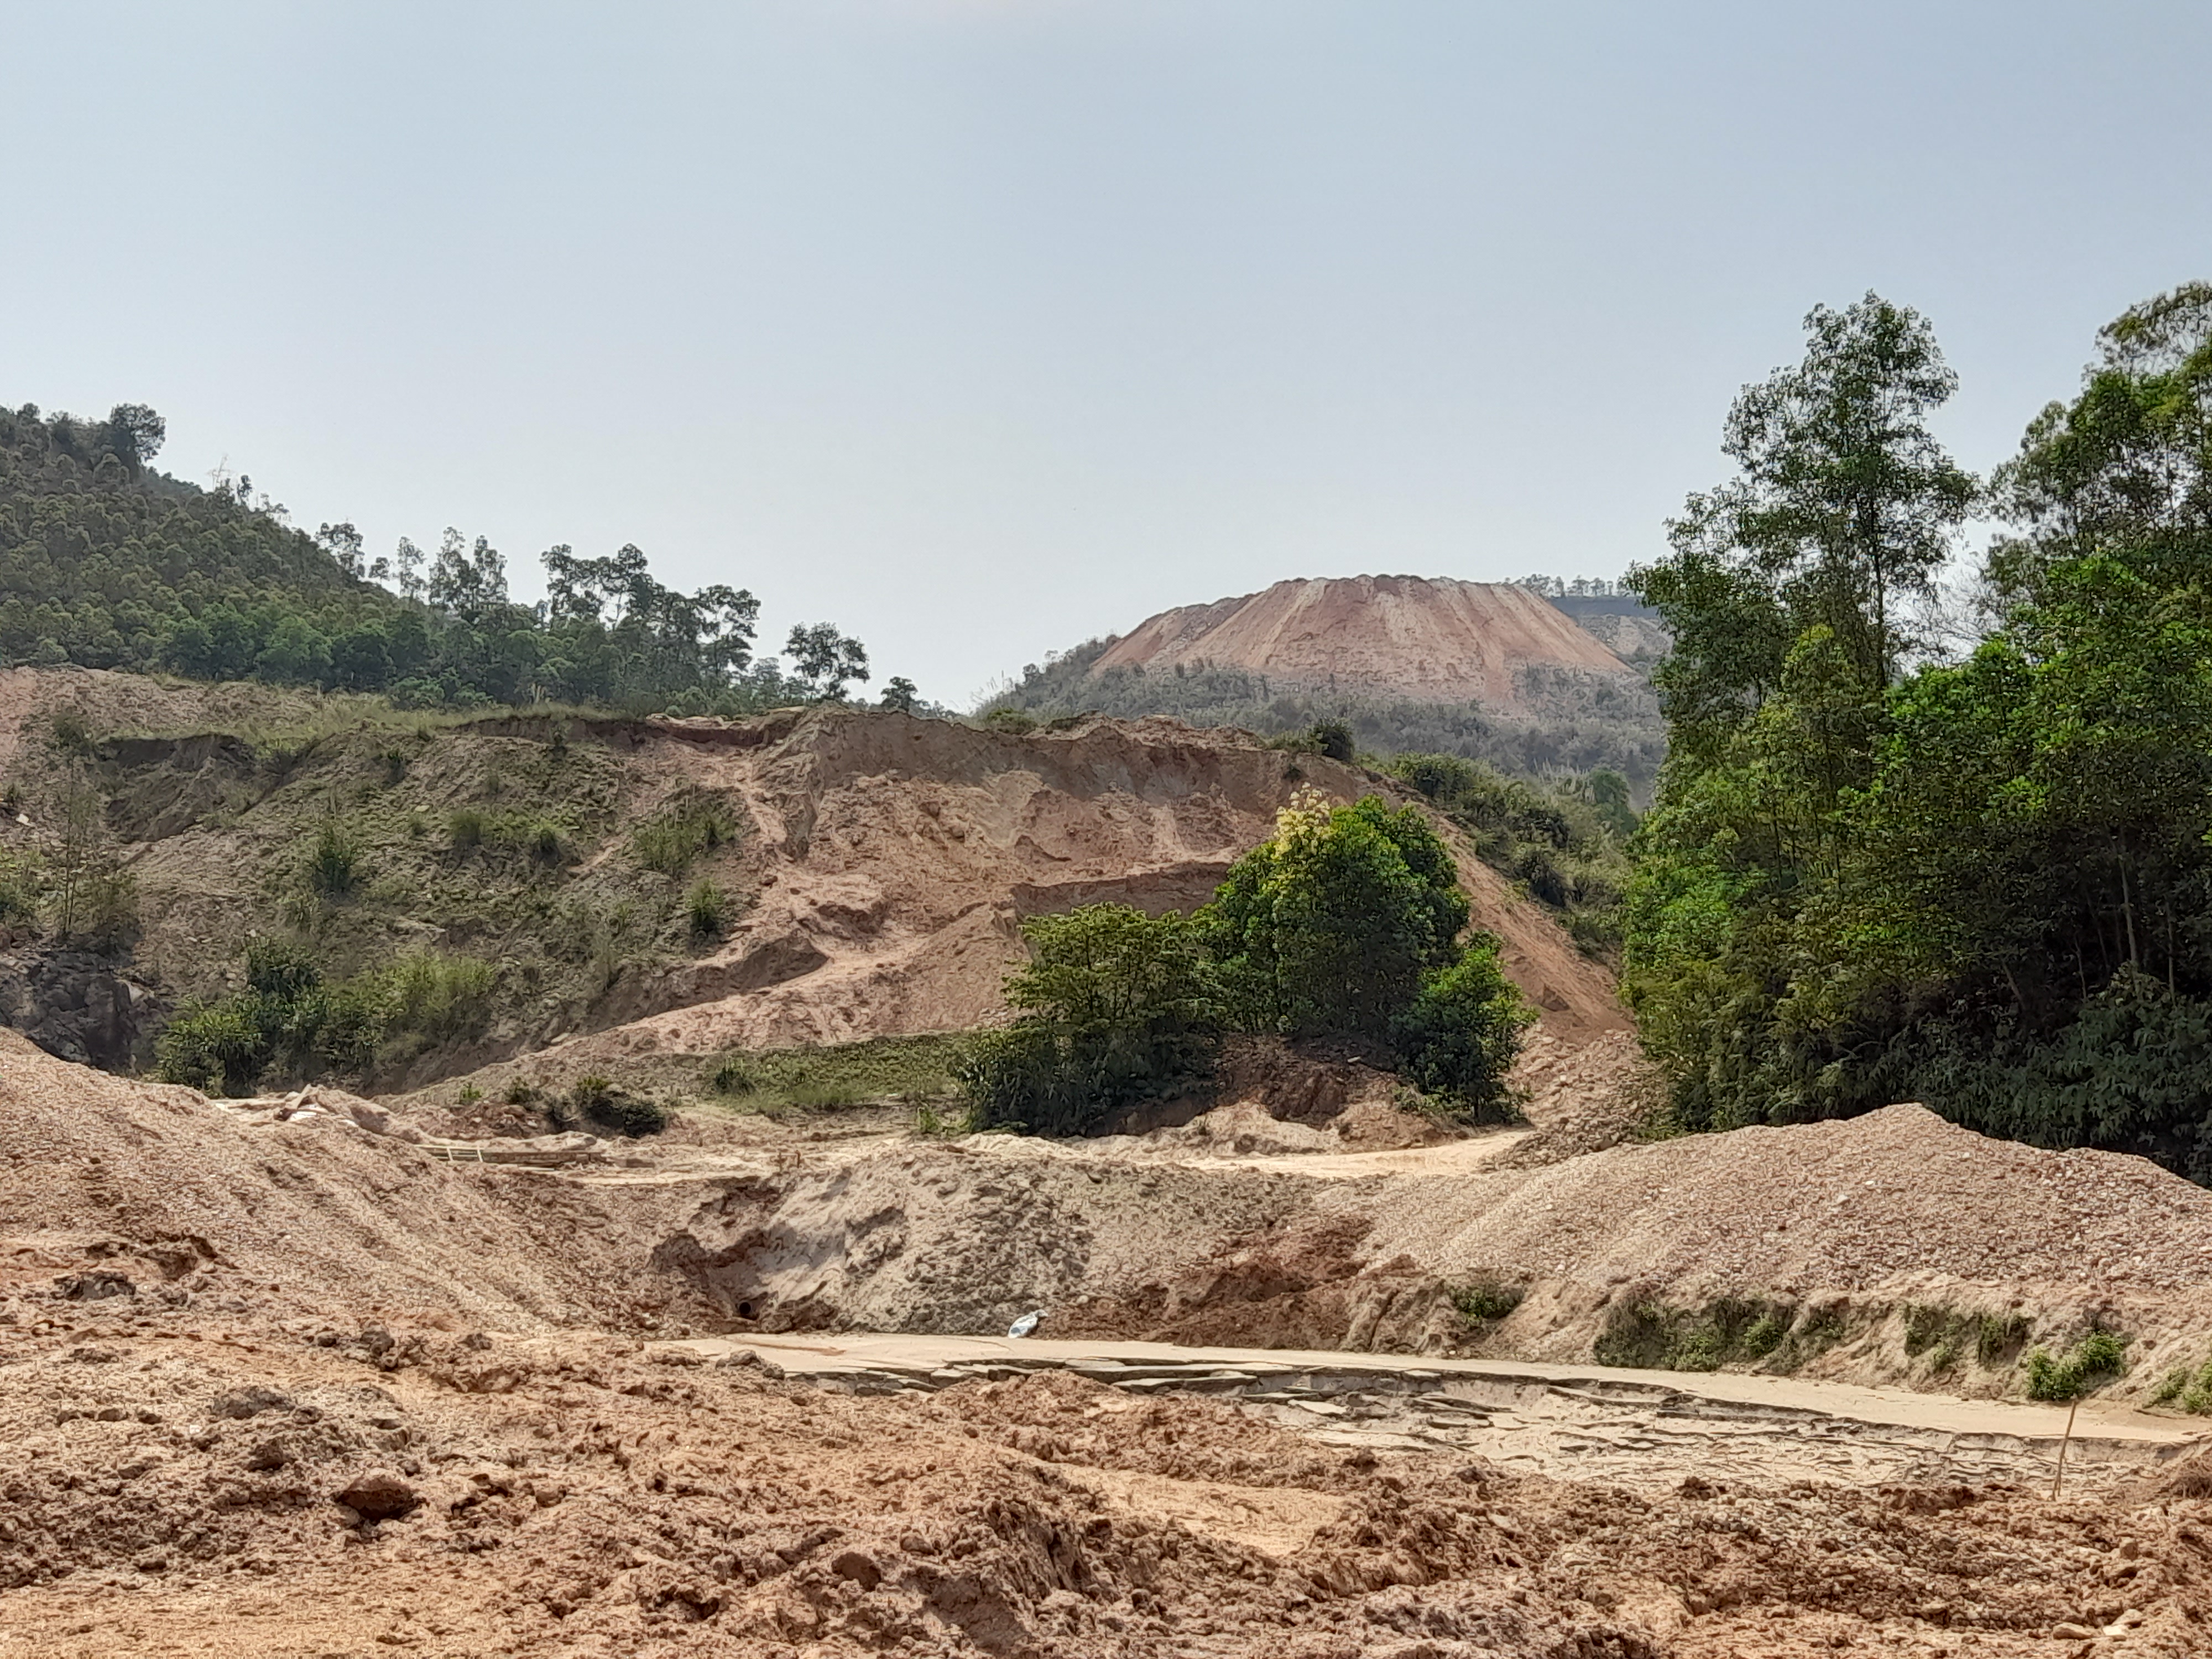 Khu vực bãi thải mỏ quặng của Công ty Hùng Vương xây dựng rất sơ sài nên cứ mưa lớn là xảy ra sự cố xô sạt đất đá xuống ruộng lúa của người xung xung quanh.